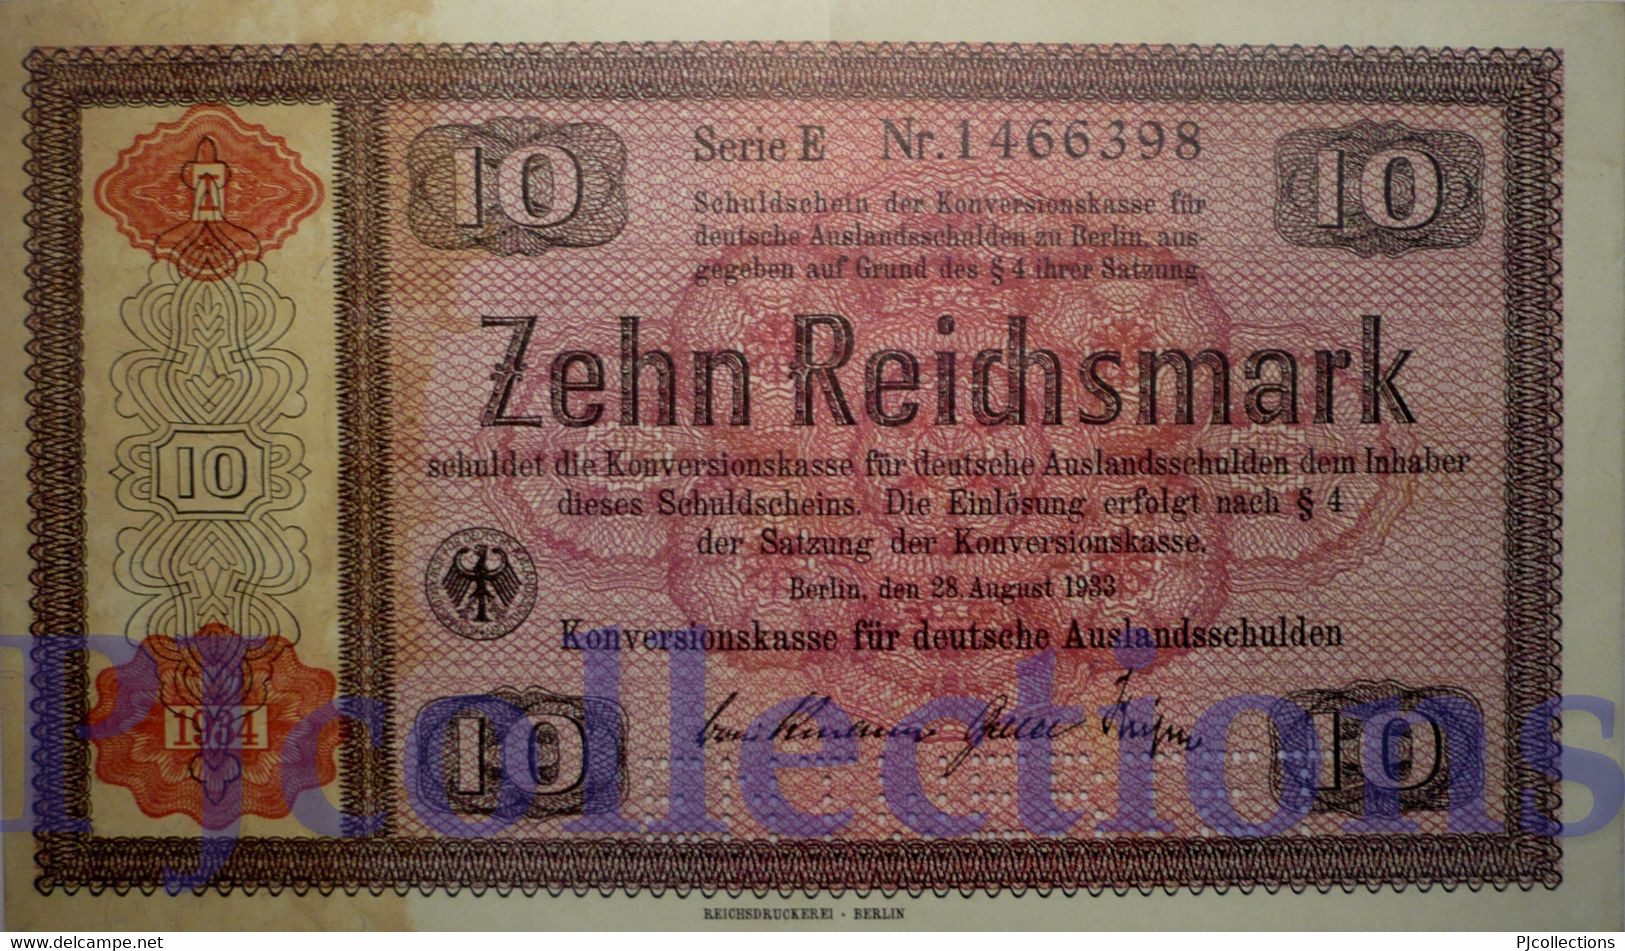 GERMANY 10 REICHSMARK 1934 PICK 208 AUNC PERFORATED "ENTWERTET" - 10 Reichsmark